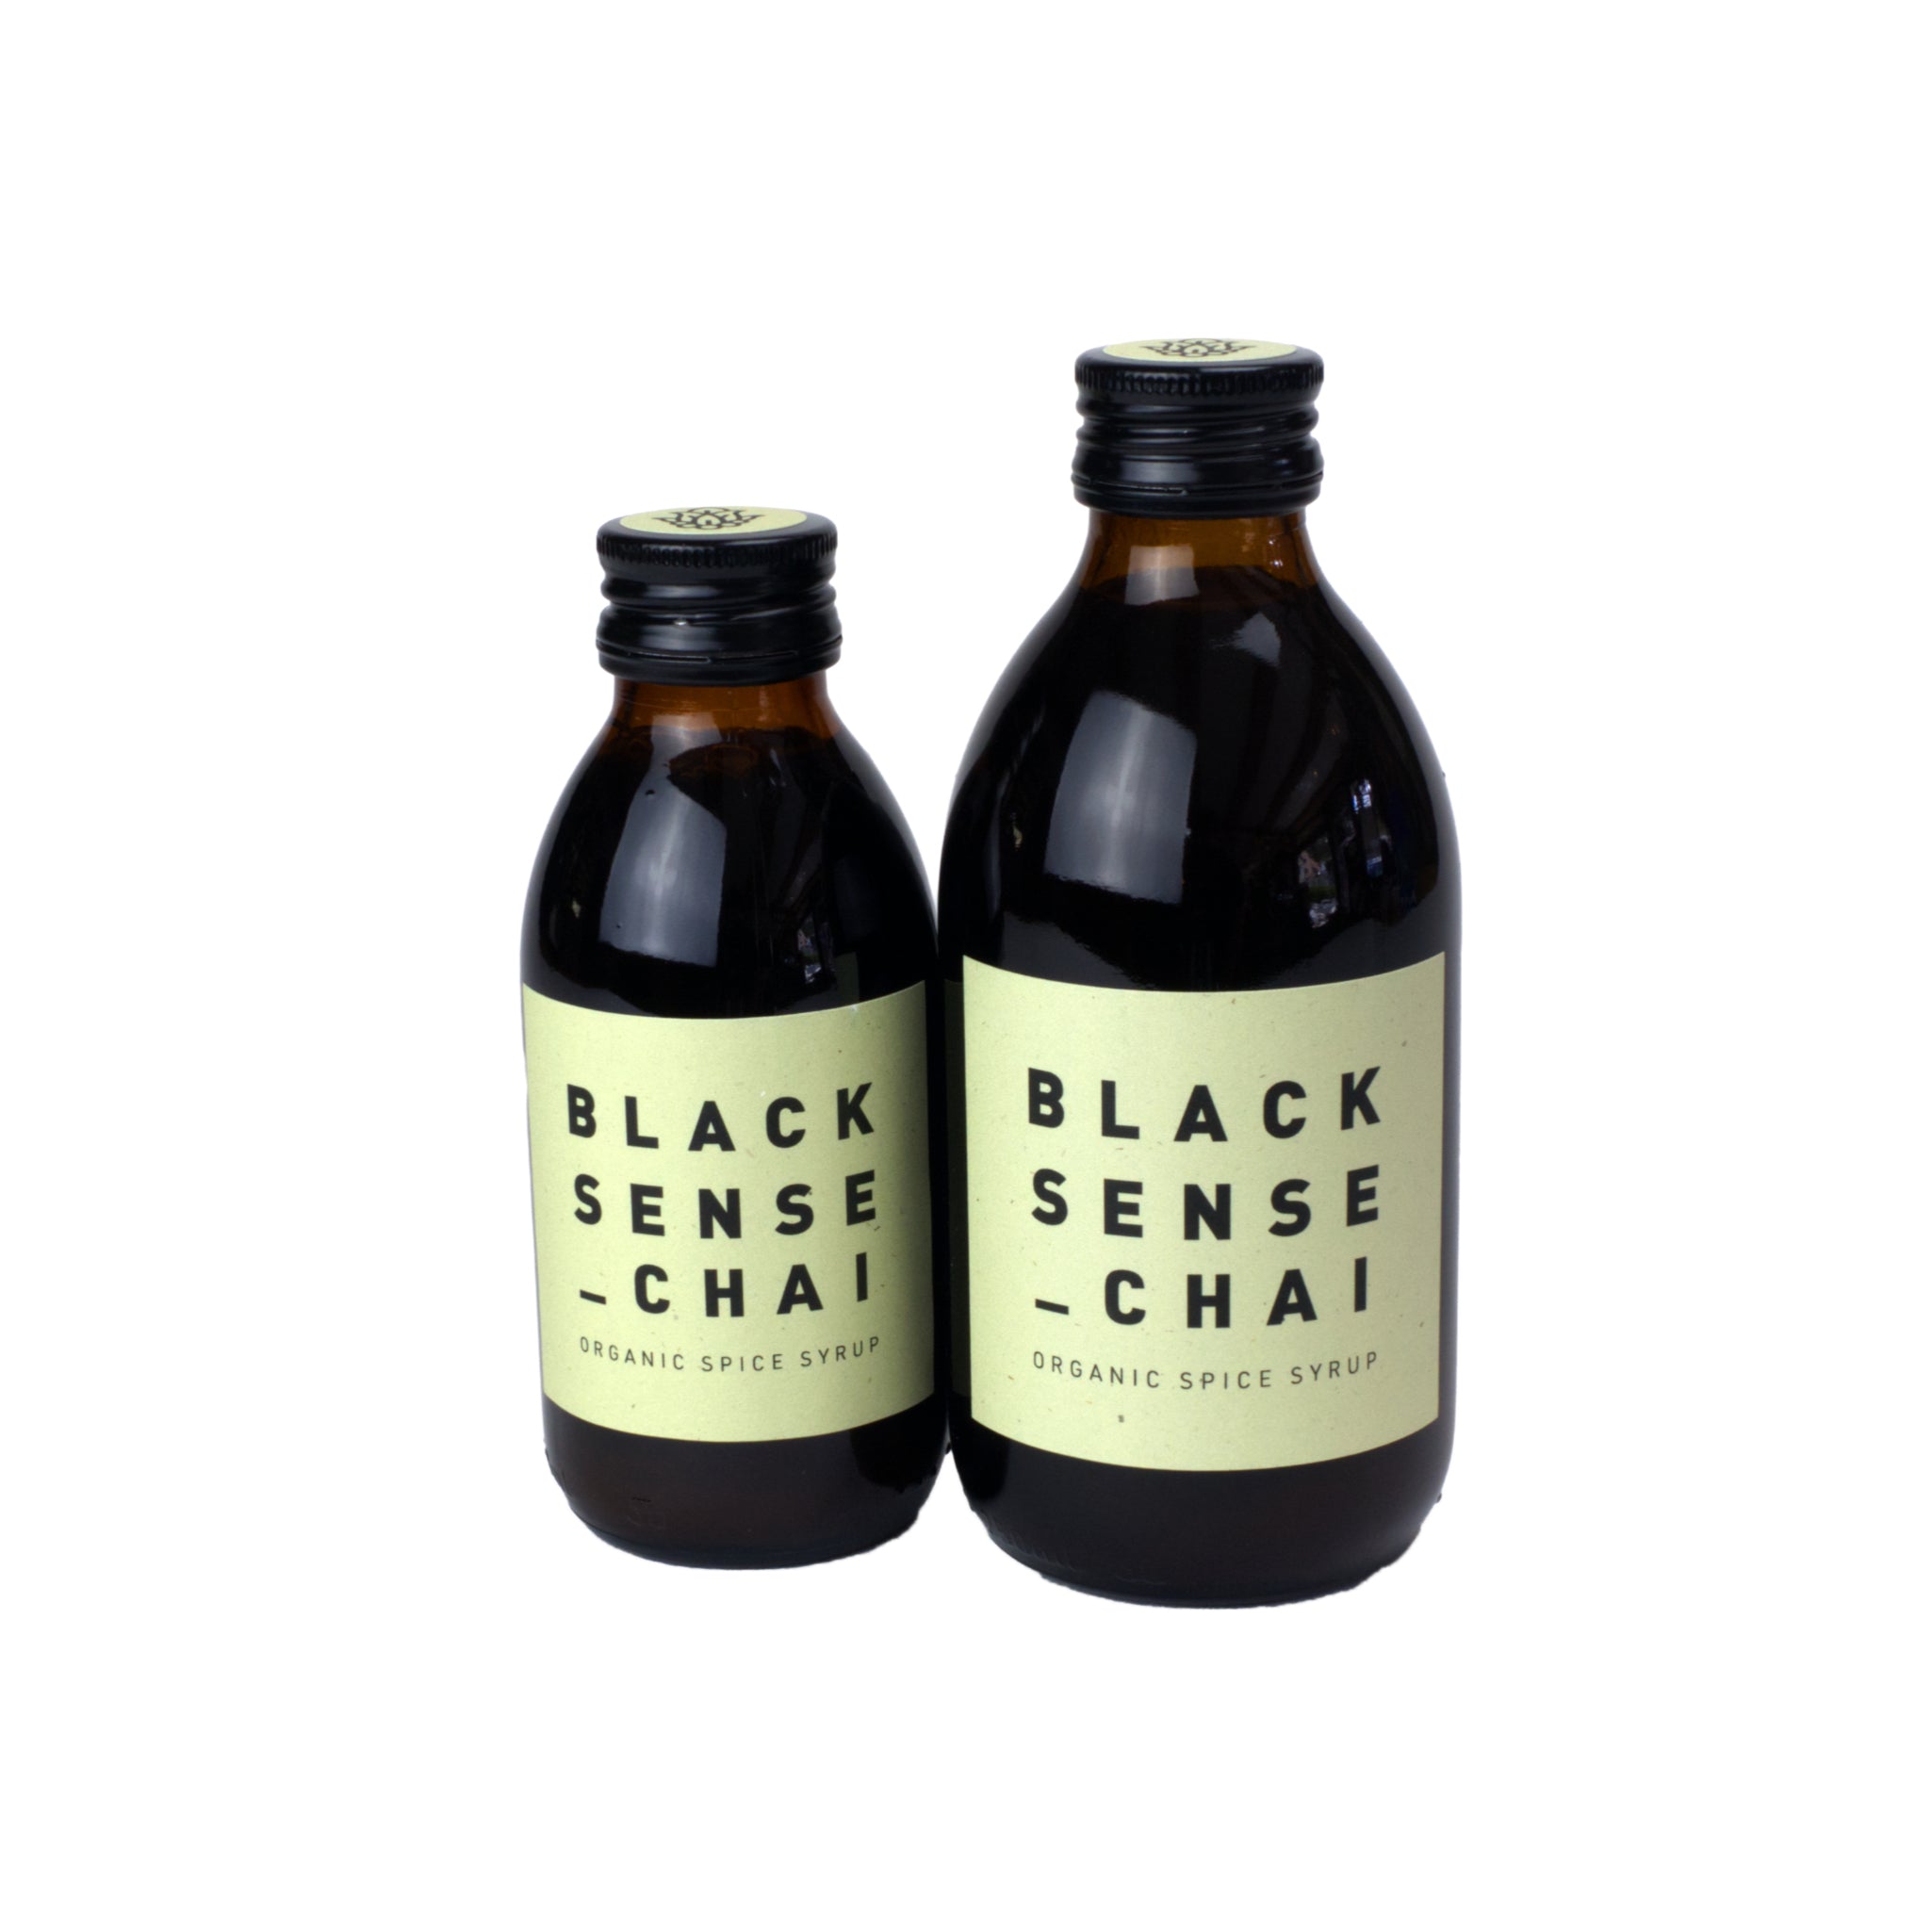 Black Sense Chai Flaschen in 150 ml und 250 ml nebeneinander. Braune Flasche mit hellgelbem Etikett.